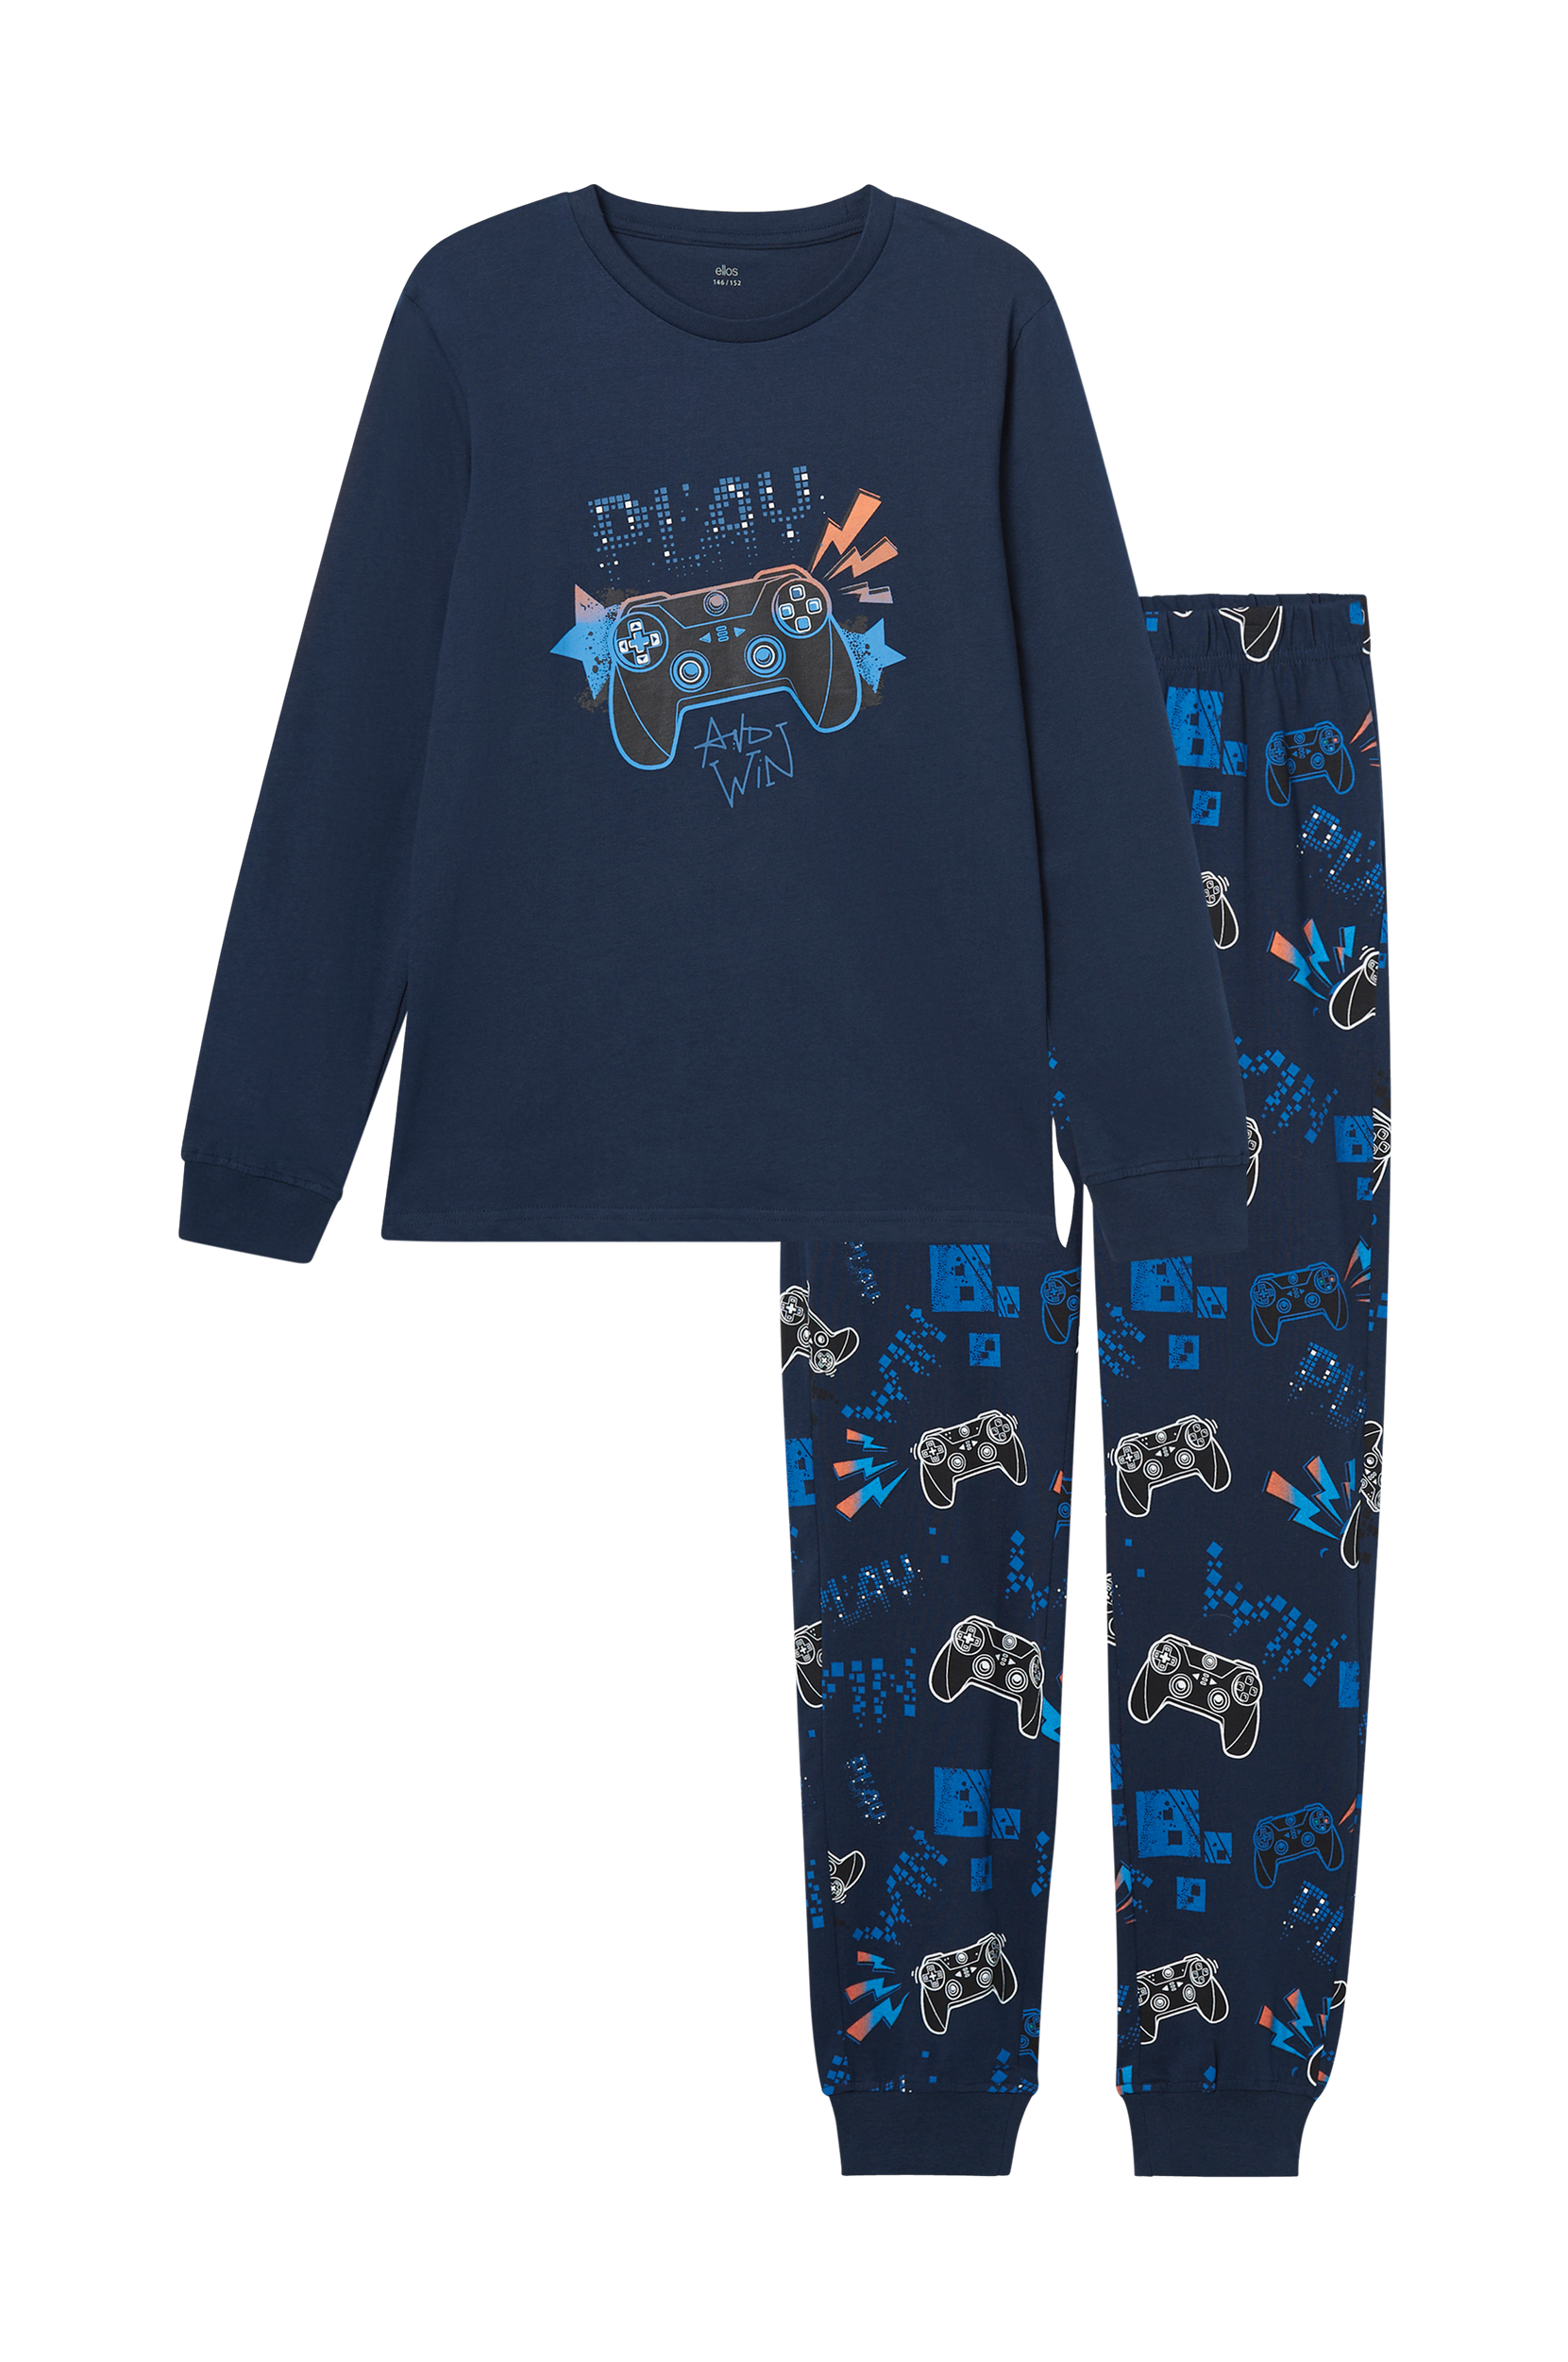 Ellos - Pyjamas Olle - - 146/152 - Nattøj - Tøj til børn (31344432)